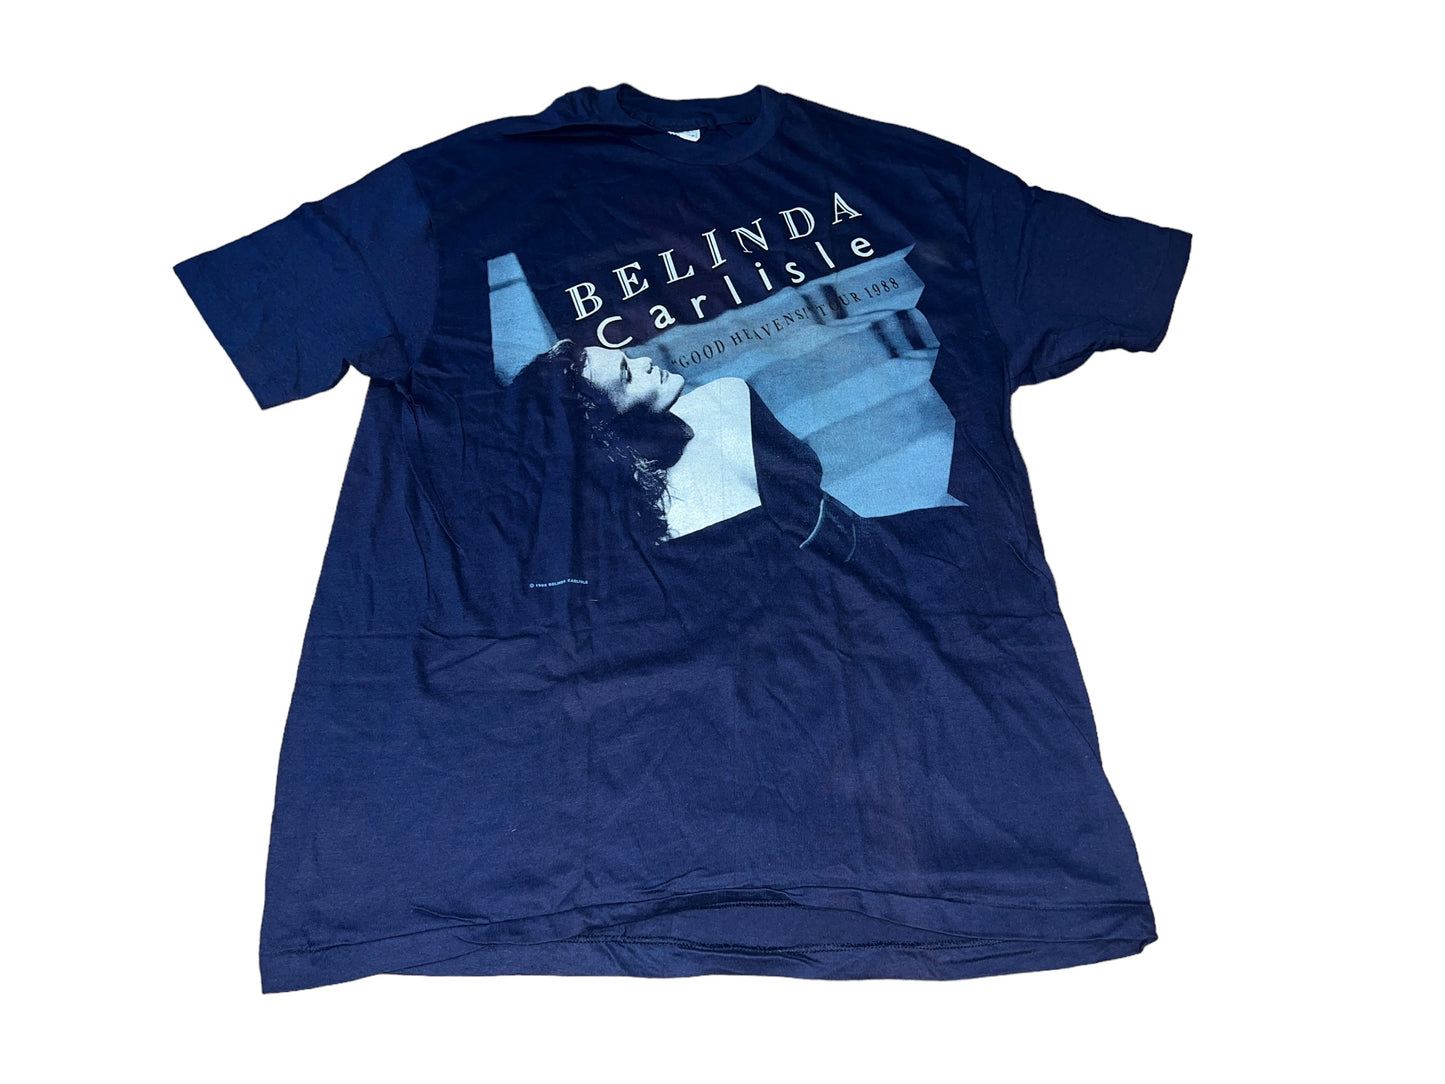 Vintage 1988 Belinda Carlisle T-Shirt